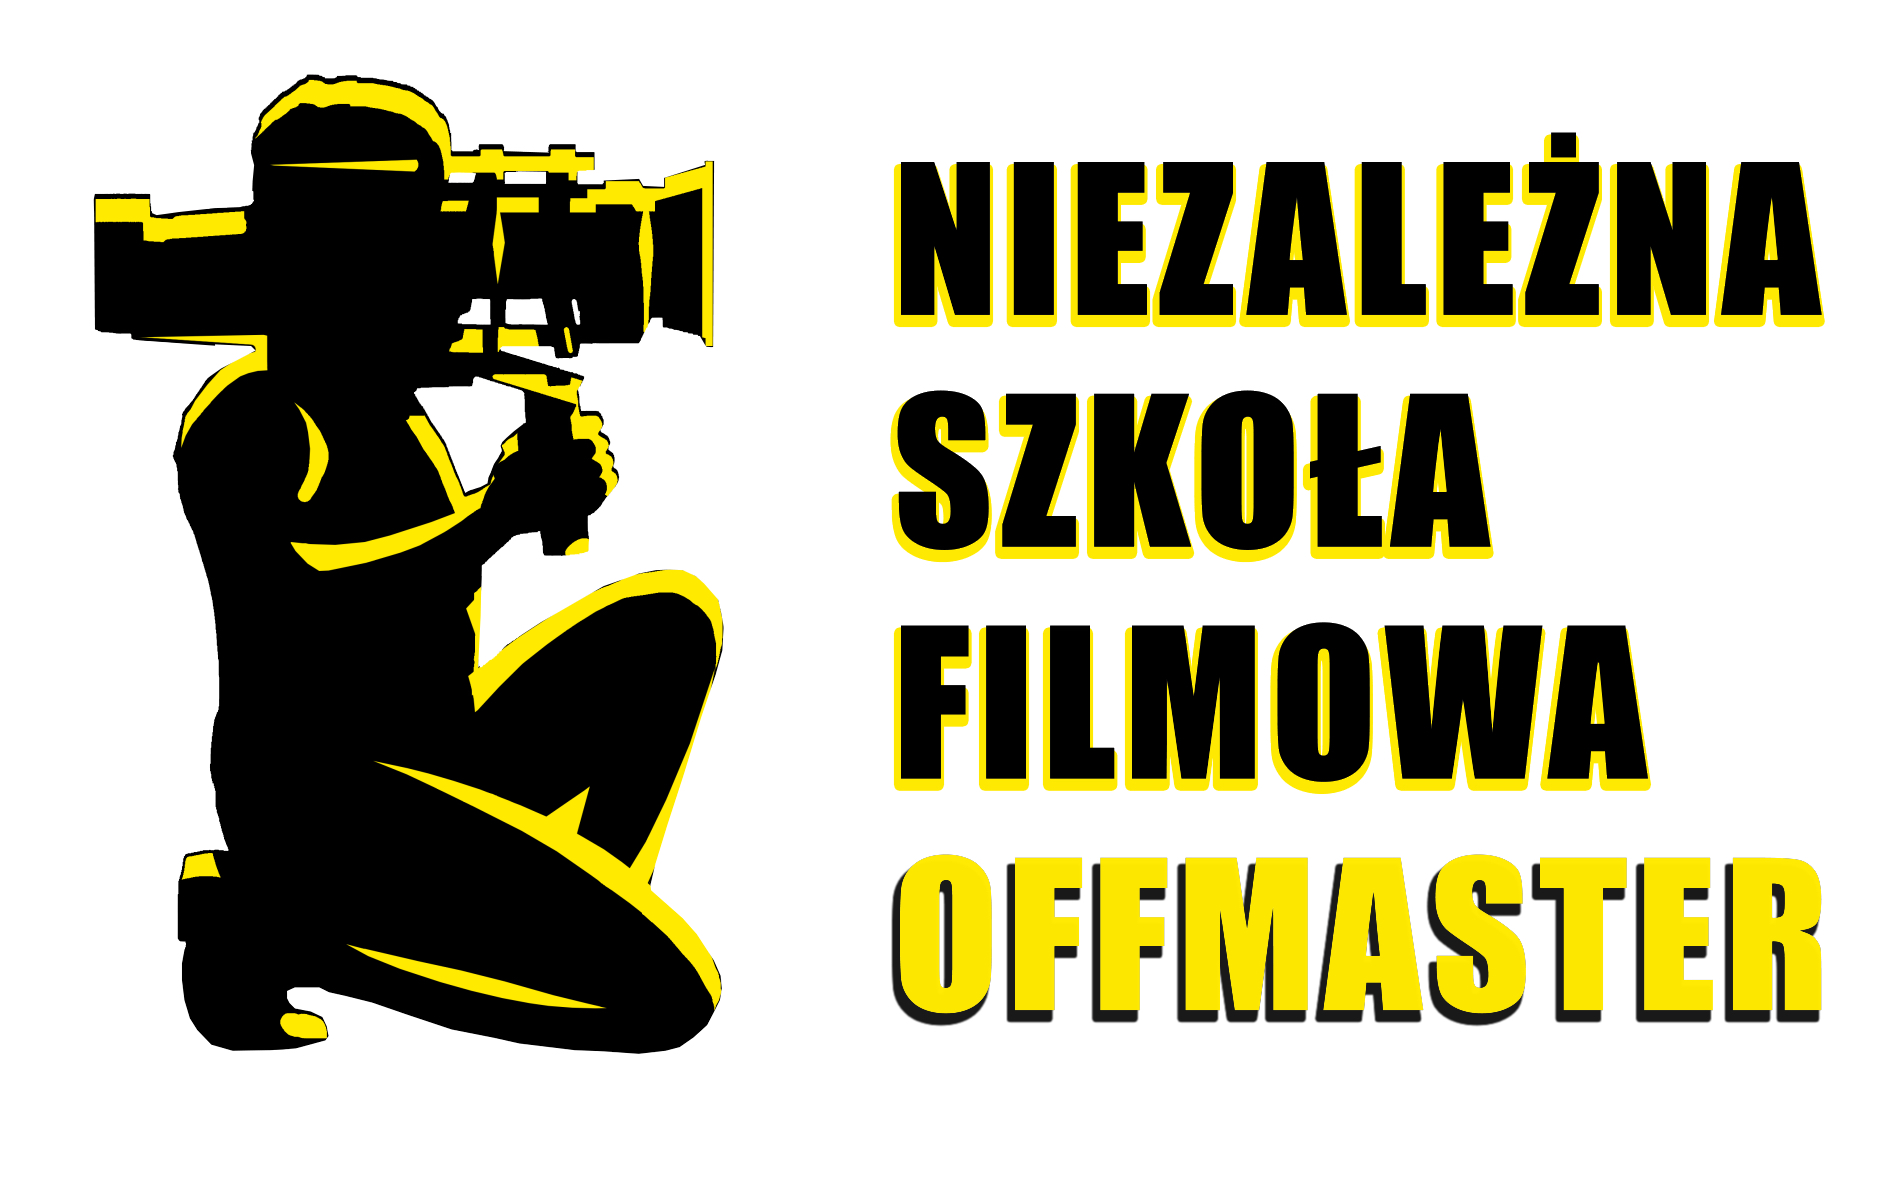 Niezależna Szkoła Filmowa Offmaster - logo